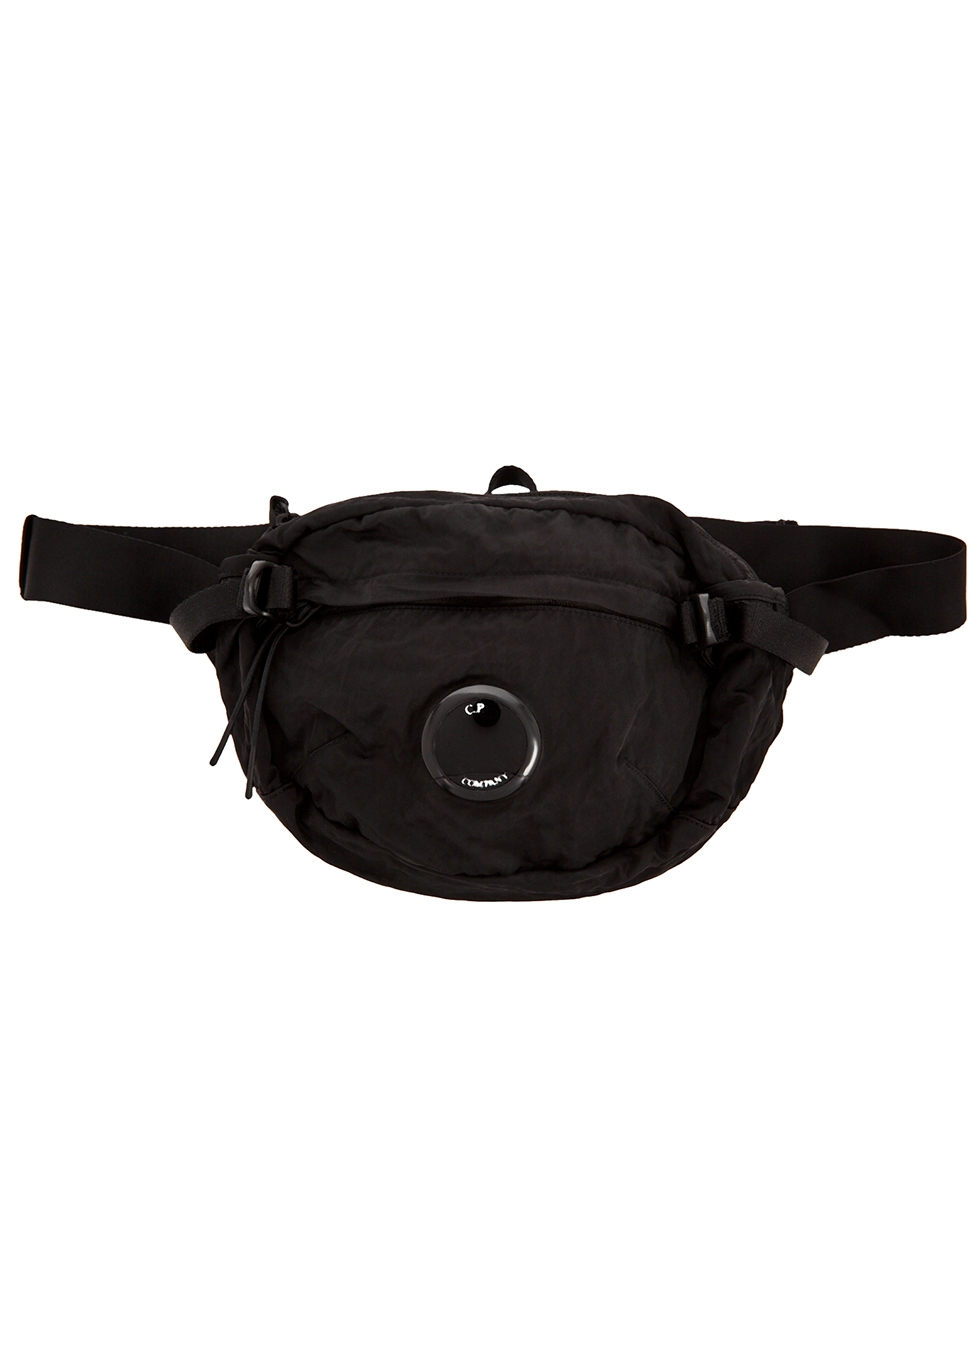 Black nylon belt bag